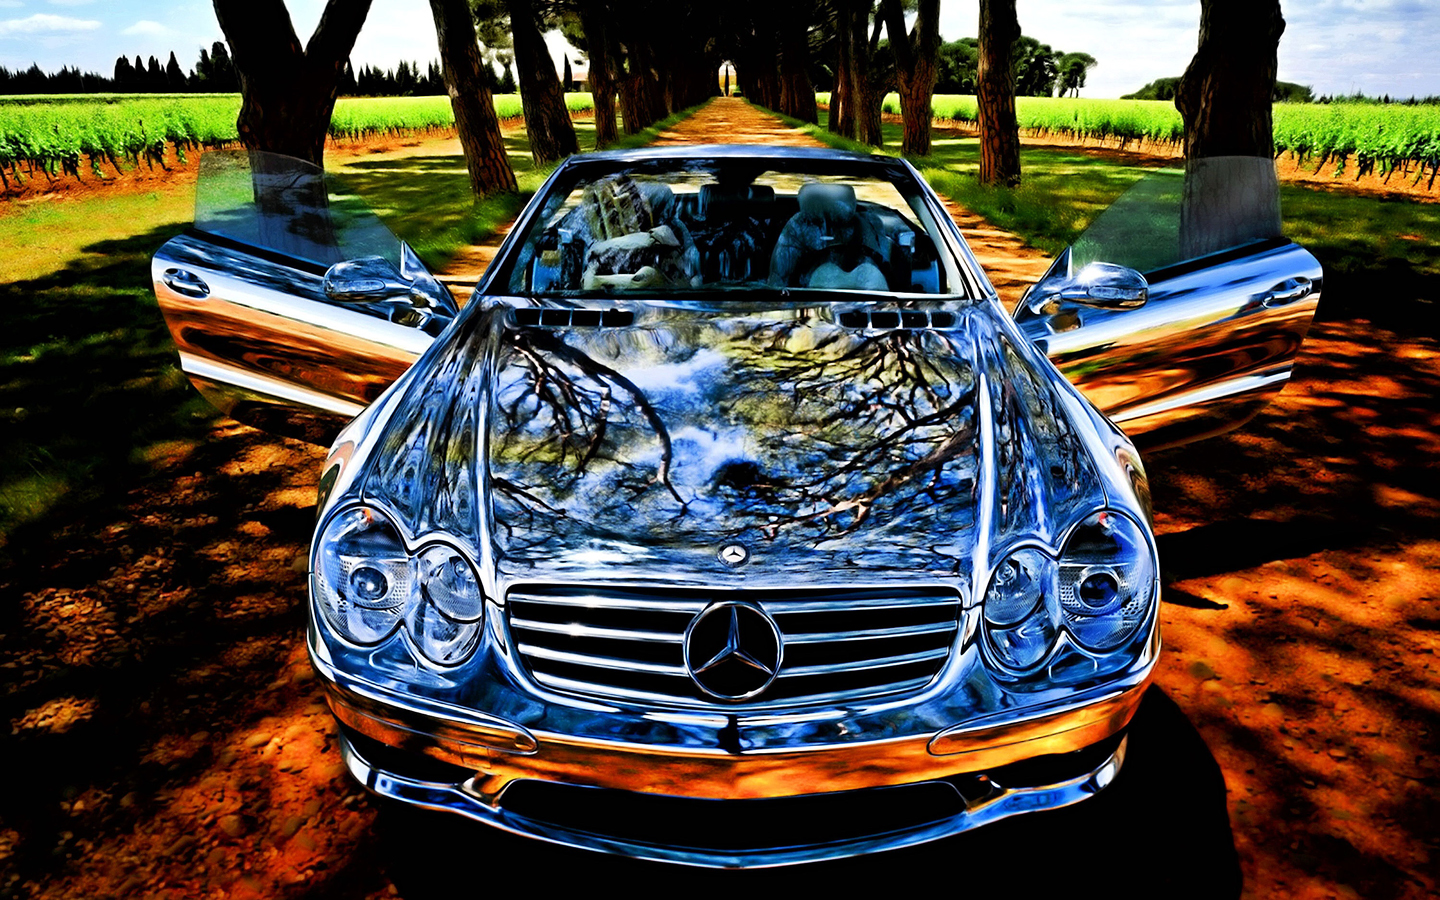 Top 10 Best Mercedes Wallpapers and Desktop Backgrounds - Original